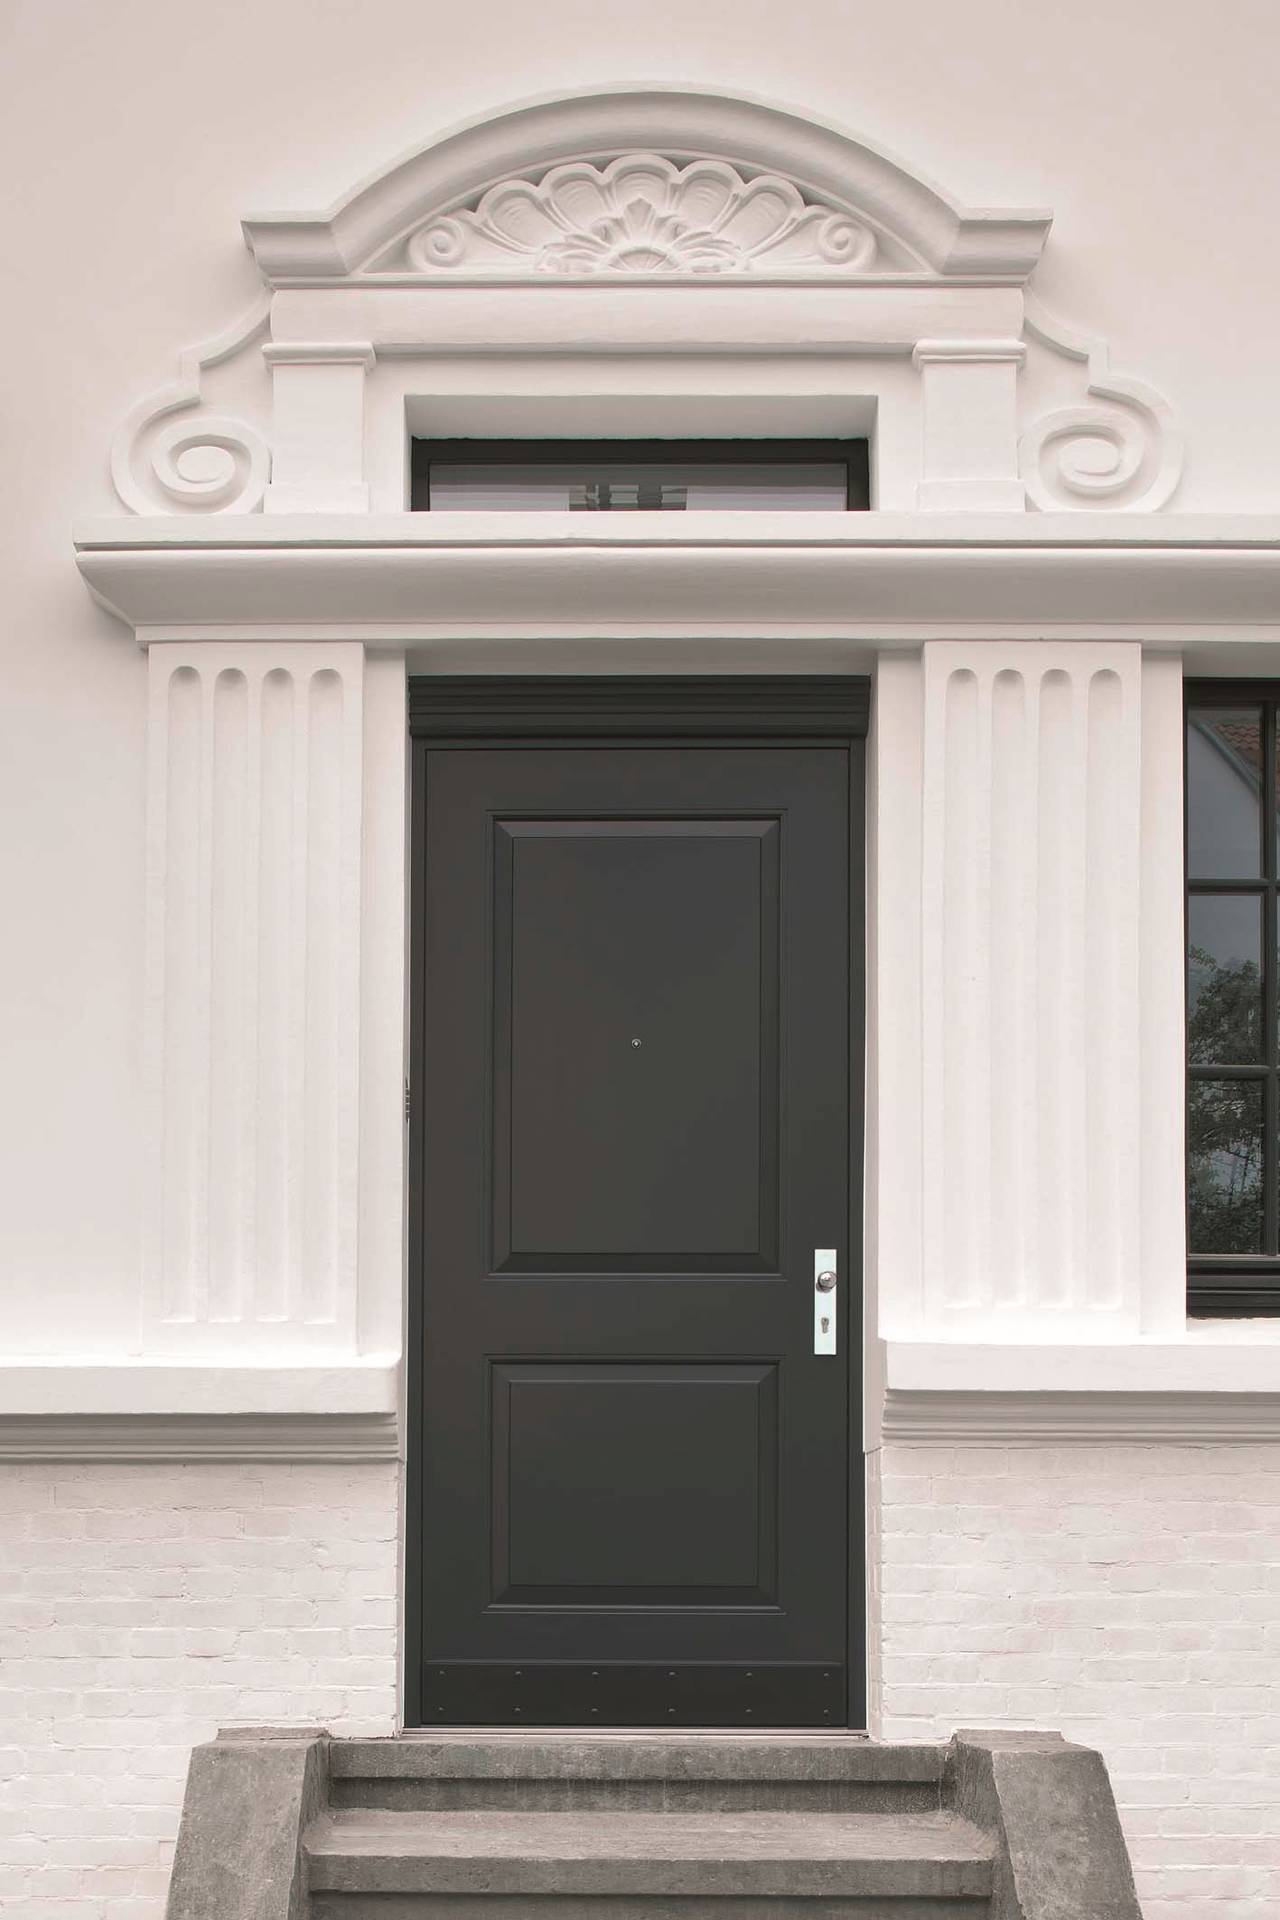 Il design e la manifattura della nuova porta realizzata dal serramentista, con la cerniera a scomparsa totale, si armonizzano alla perfezione con lo stile della villa storica.